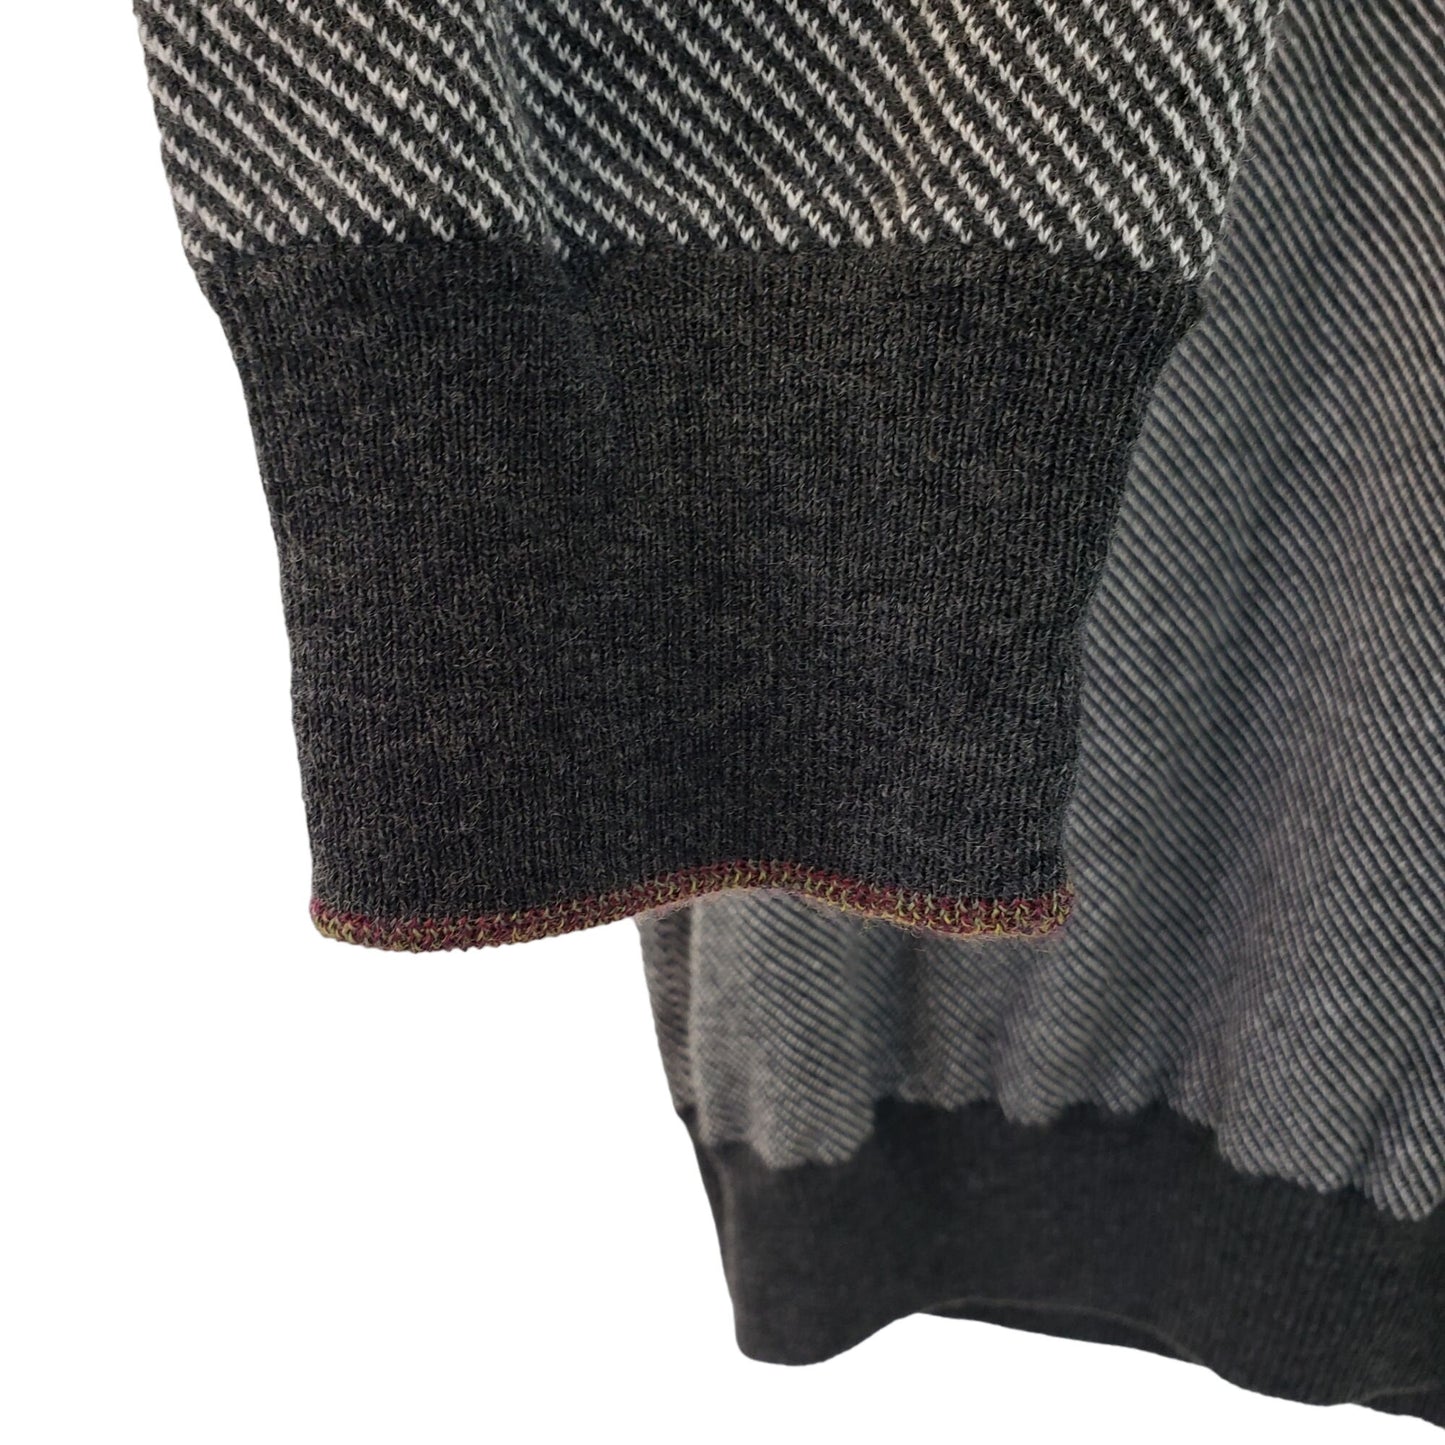 NWOT Robert Graham Rhett Wool Blend Quarter Zip Sweater Size Medium